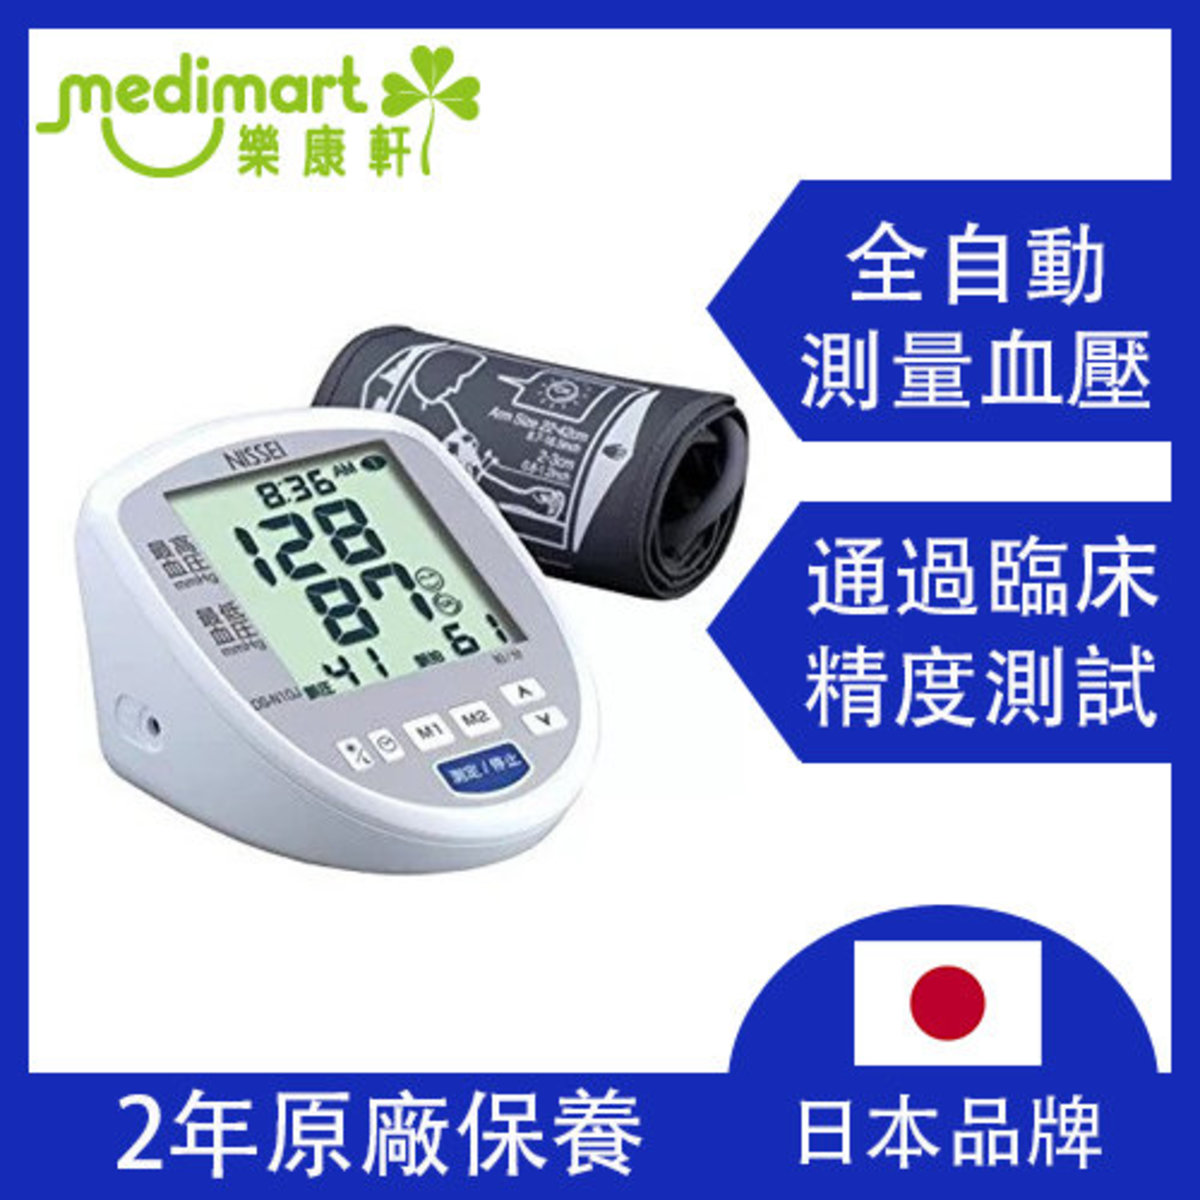 血圧計 上腕式デジタル血圧計 DS-G10J 日本精密測器 - 血圧計